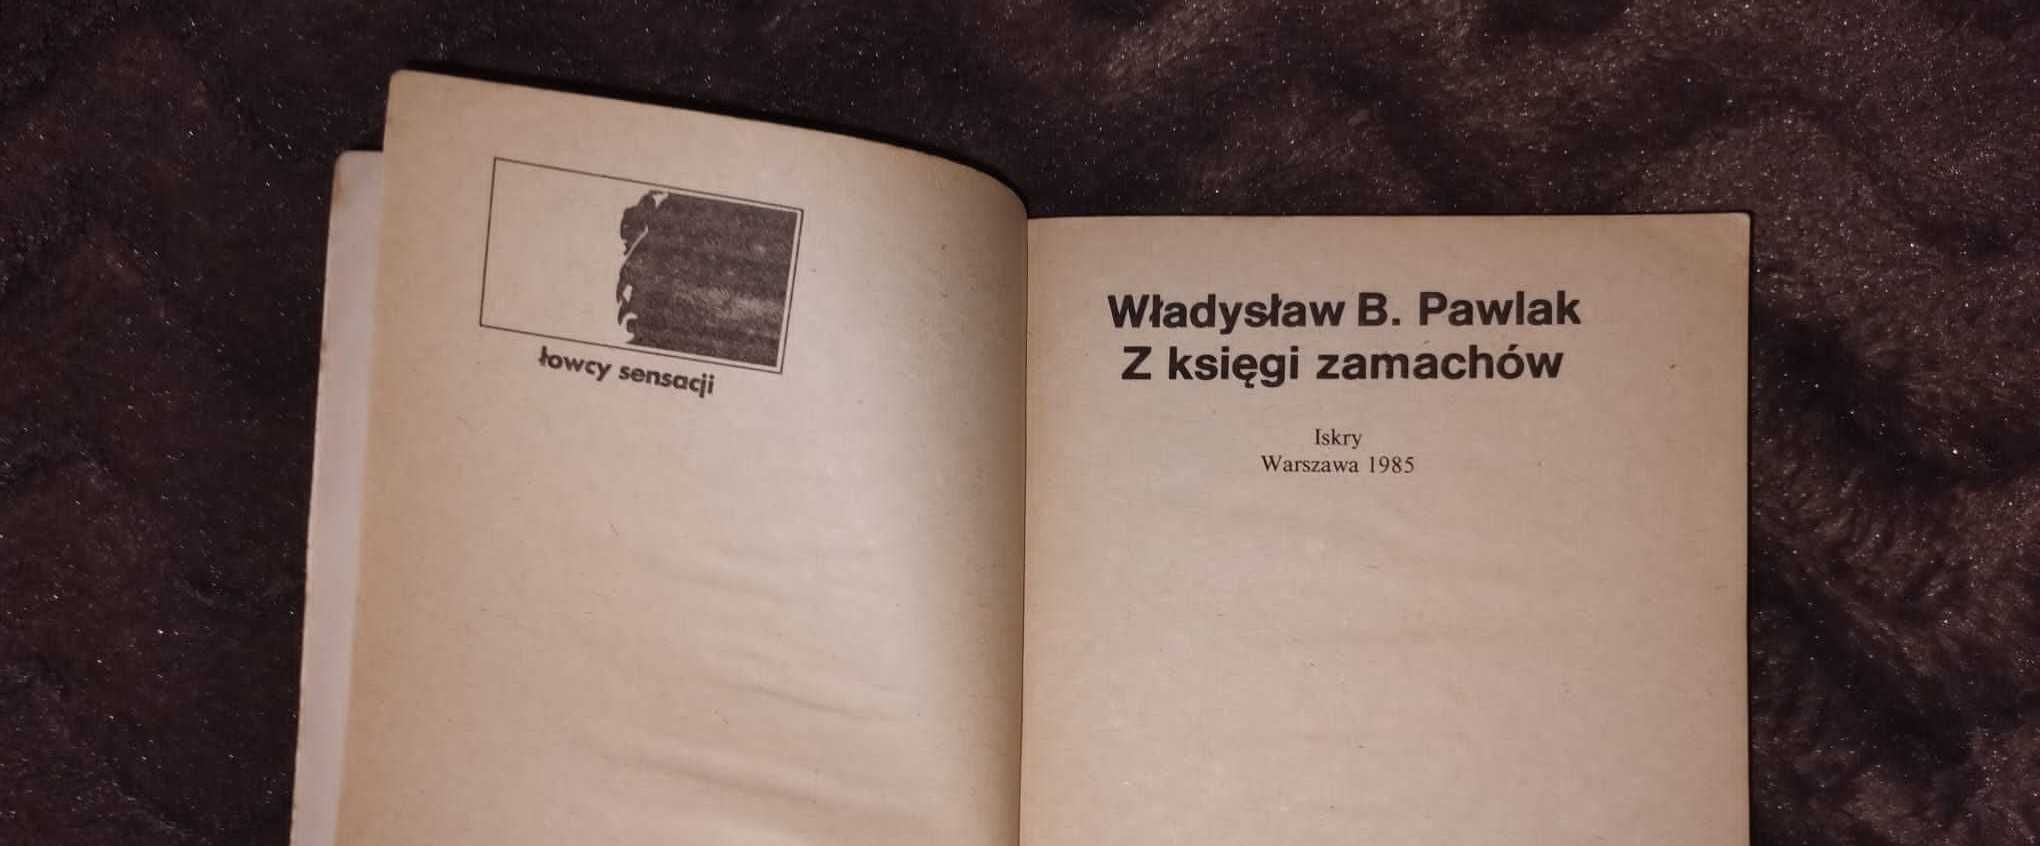 książka - "z księgi zamachów" Władysław B. Pawlak - Iskry